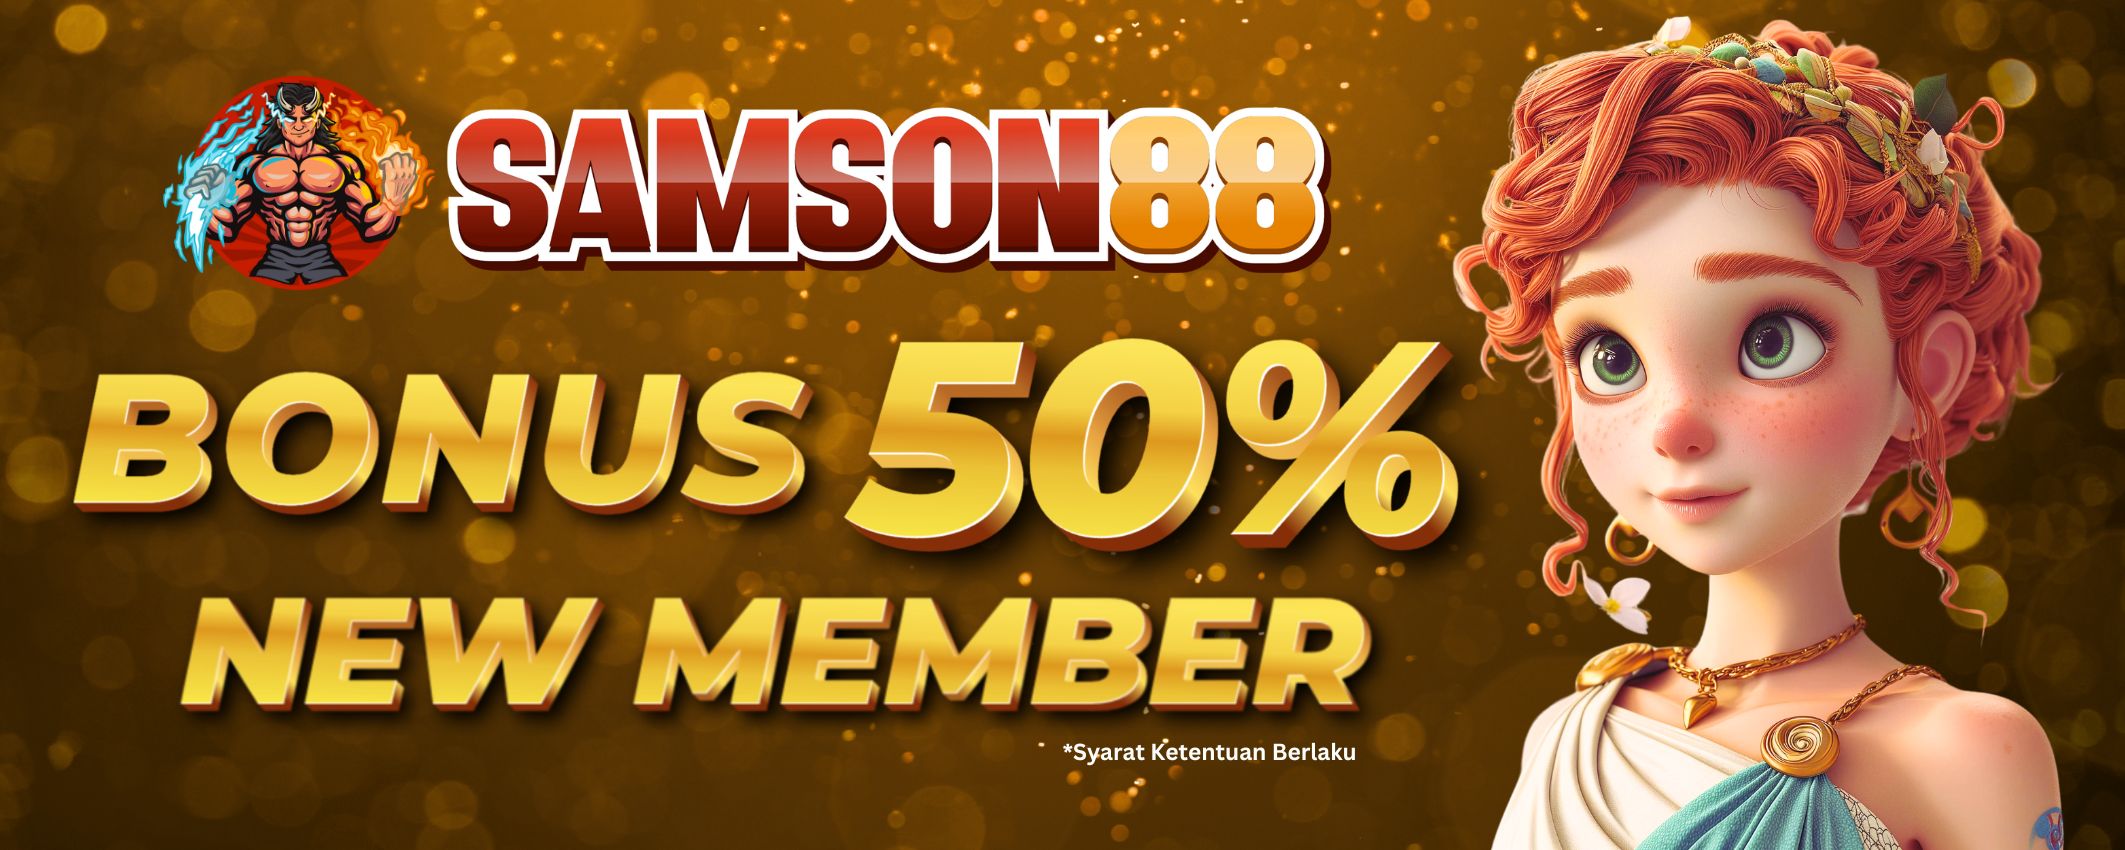 Samson88 Bonus 50% New Member